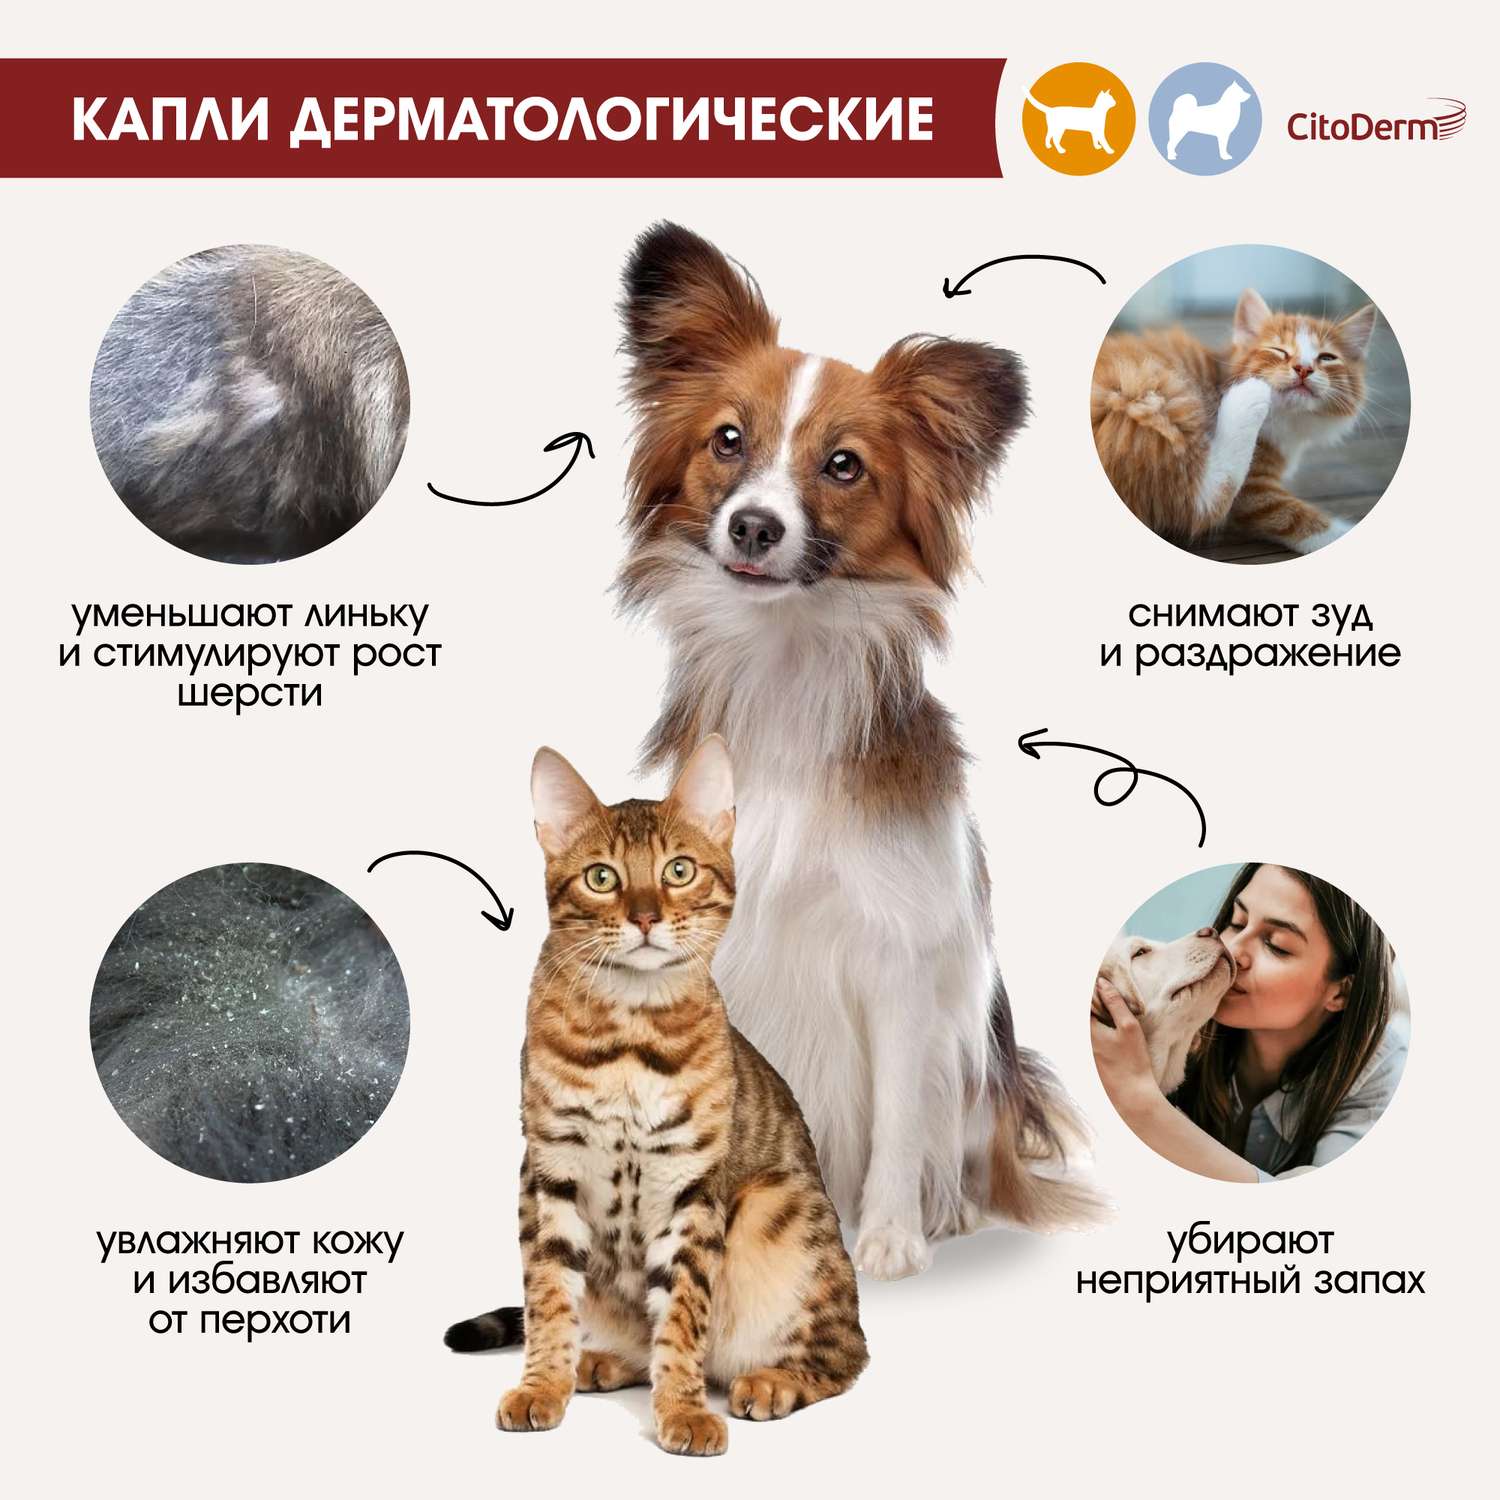 Капли для кошек и собак CitoDerm до 10кг дерматологические 1мл - фото 3